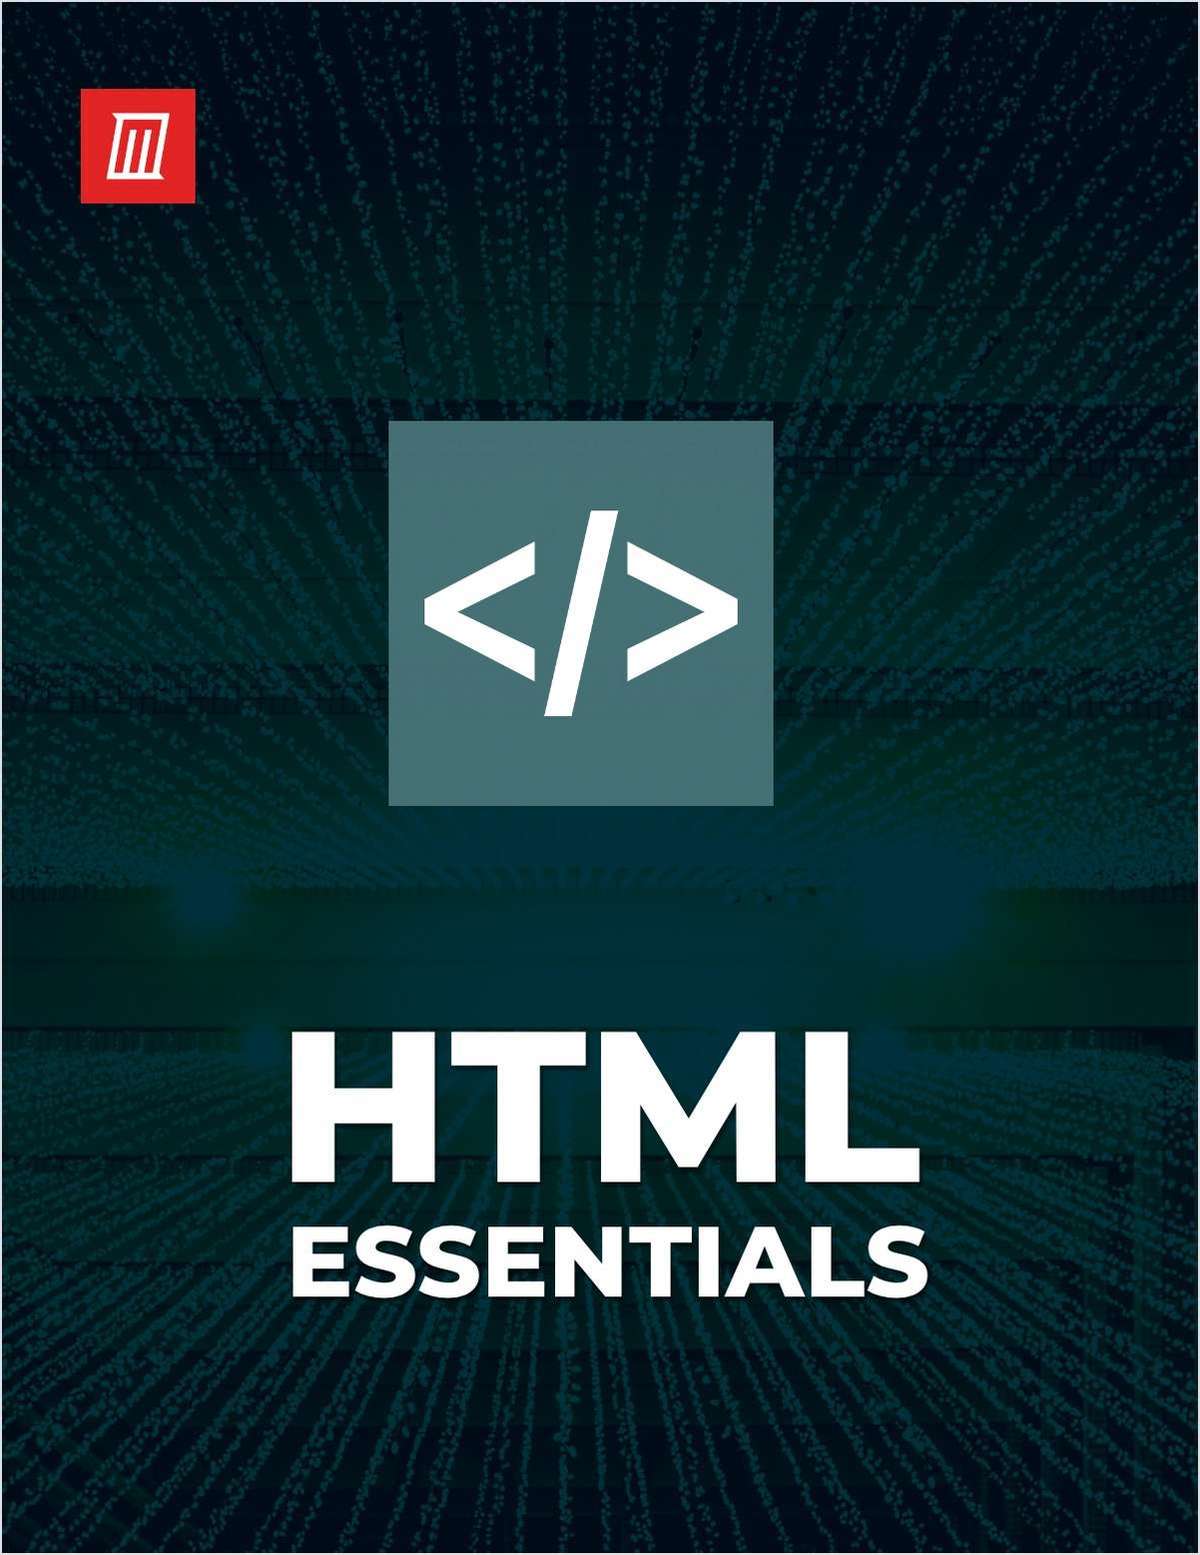 HTML Essentials